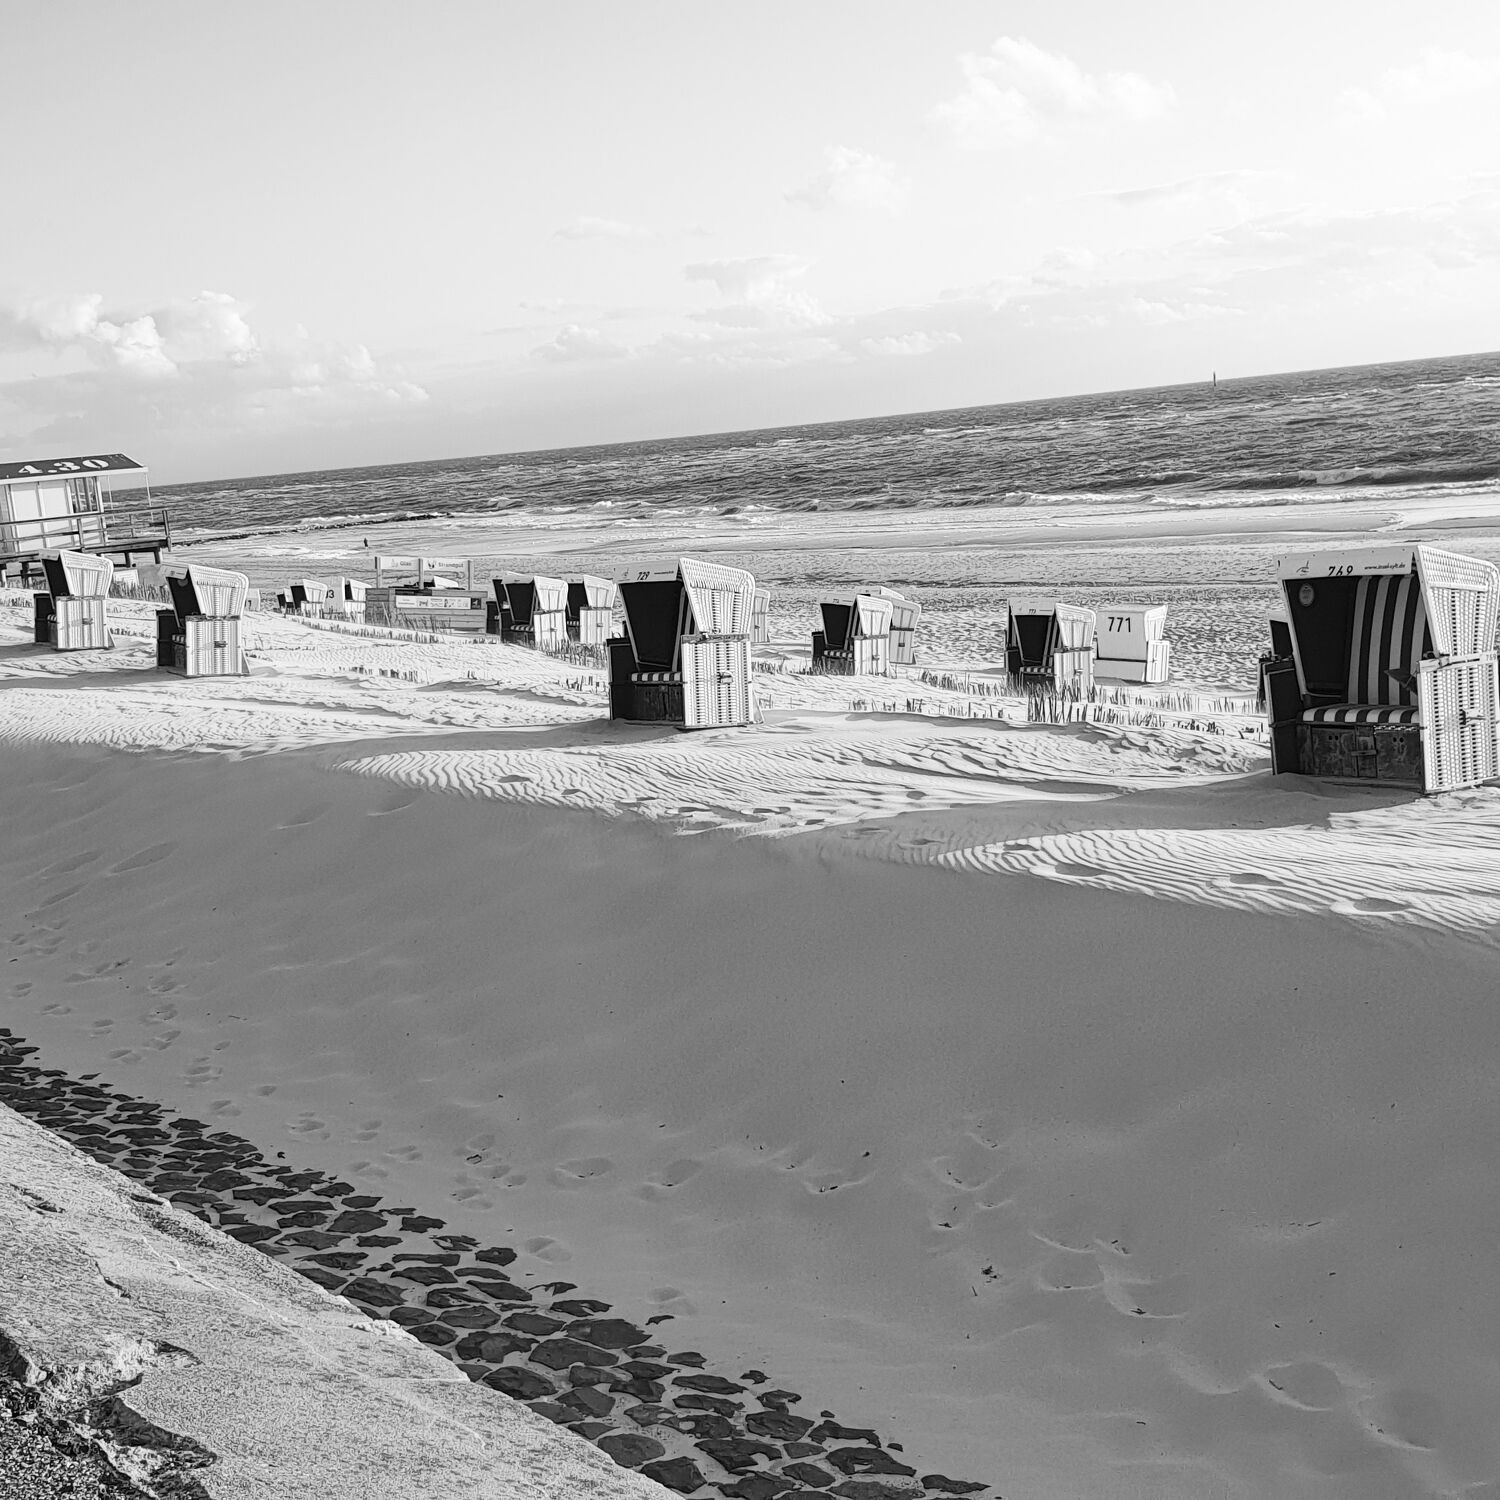 Bild mit Strand, Sandstrand, Sandstrand, Strandblick, Strandkörbe, Strandkorb am Meer, Sanddünen